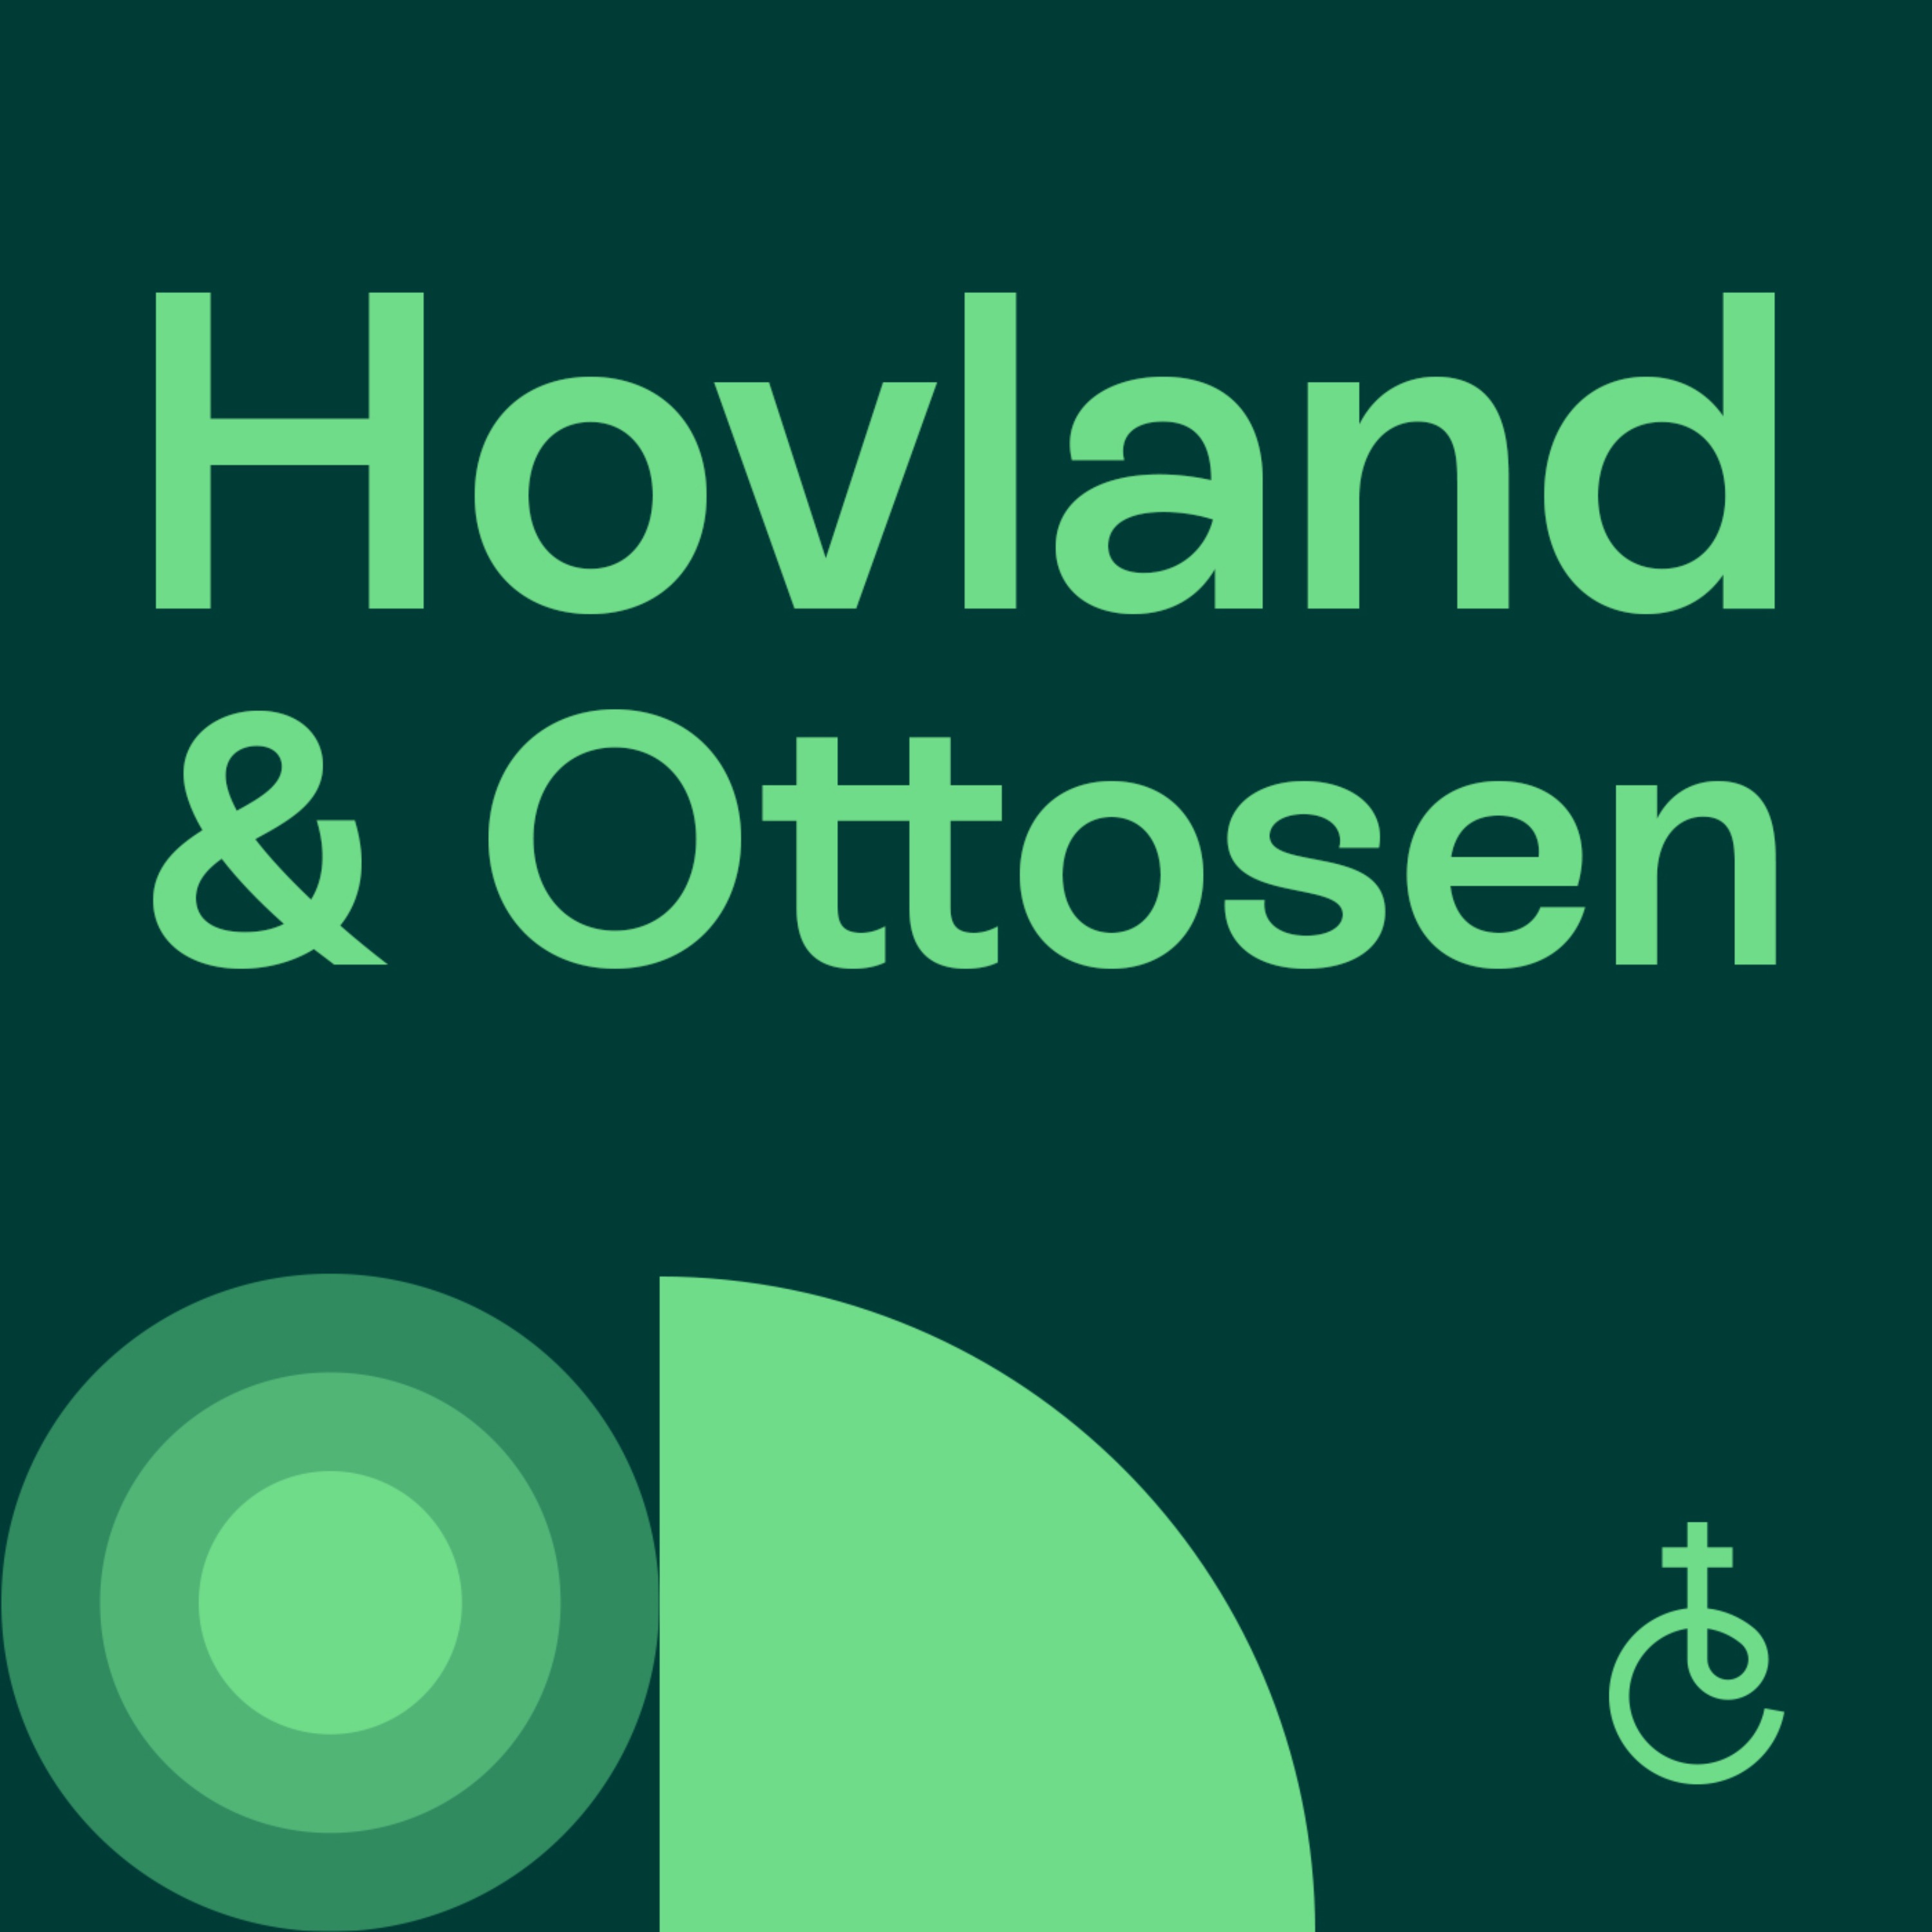 Hovland & Ottosen